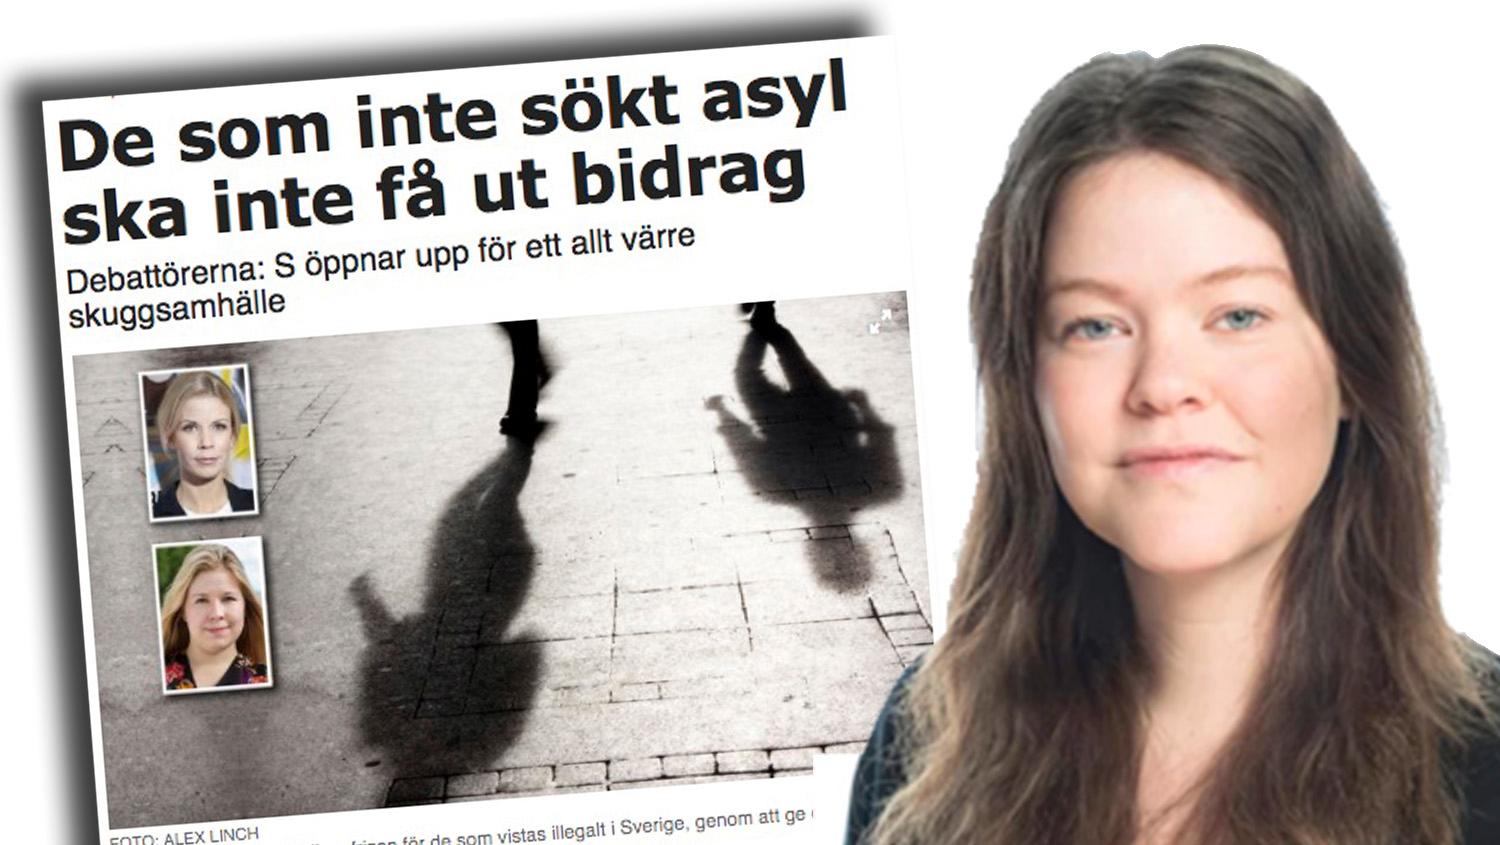 Att som Moderaterna i Stockholms Stad göra livet outhärdligt för papperslösa barn, enkom för att driva signalpolitik, är skamligt, skriver debattören.